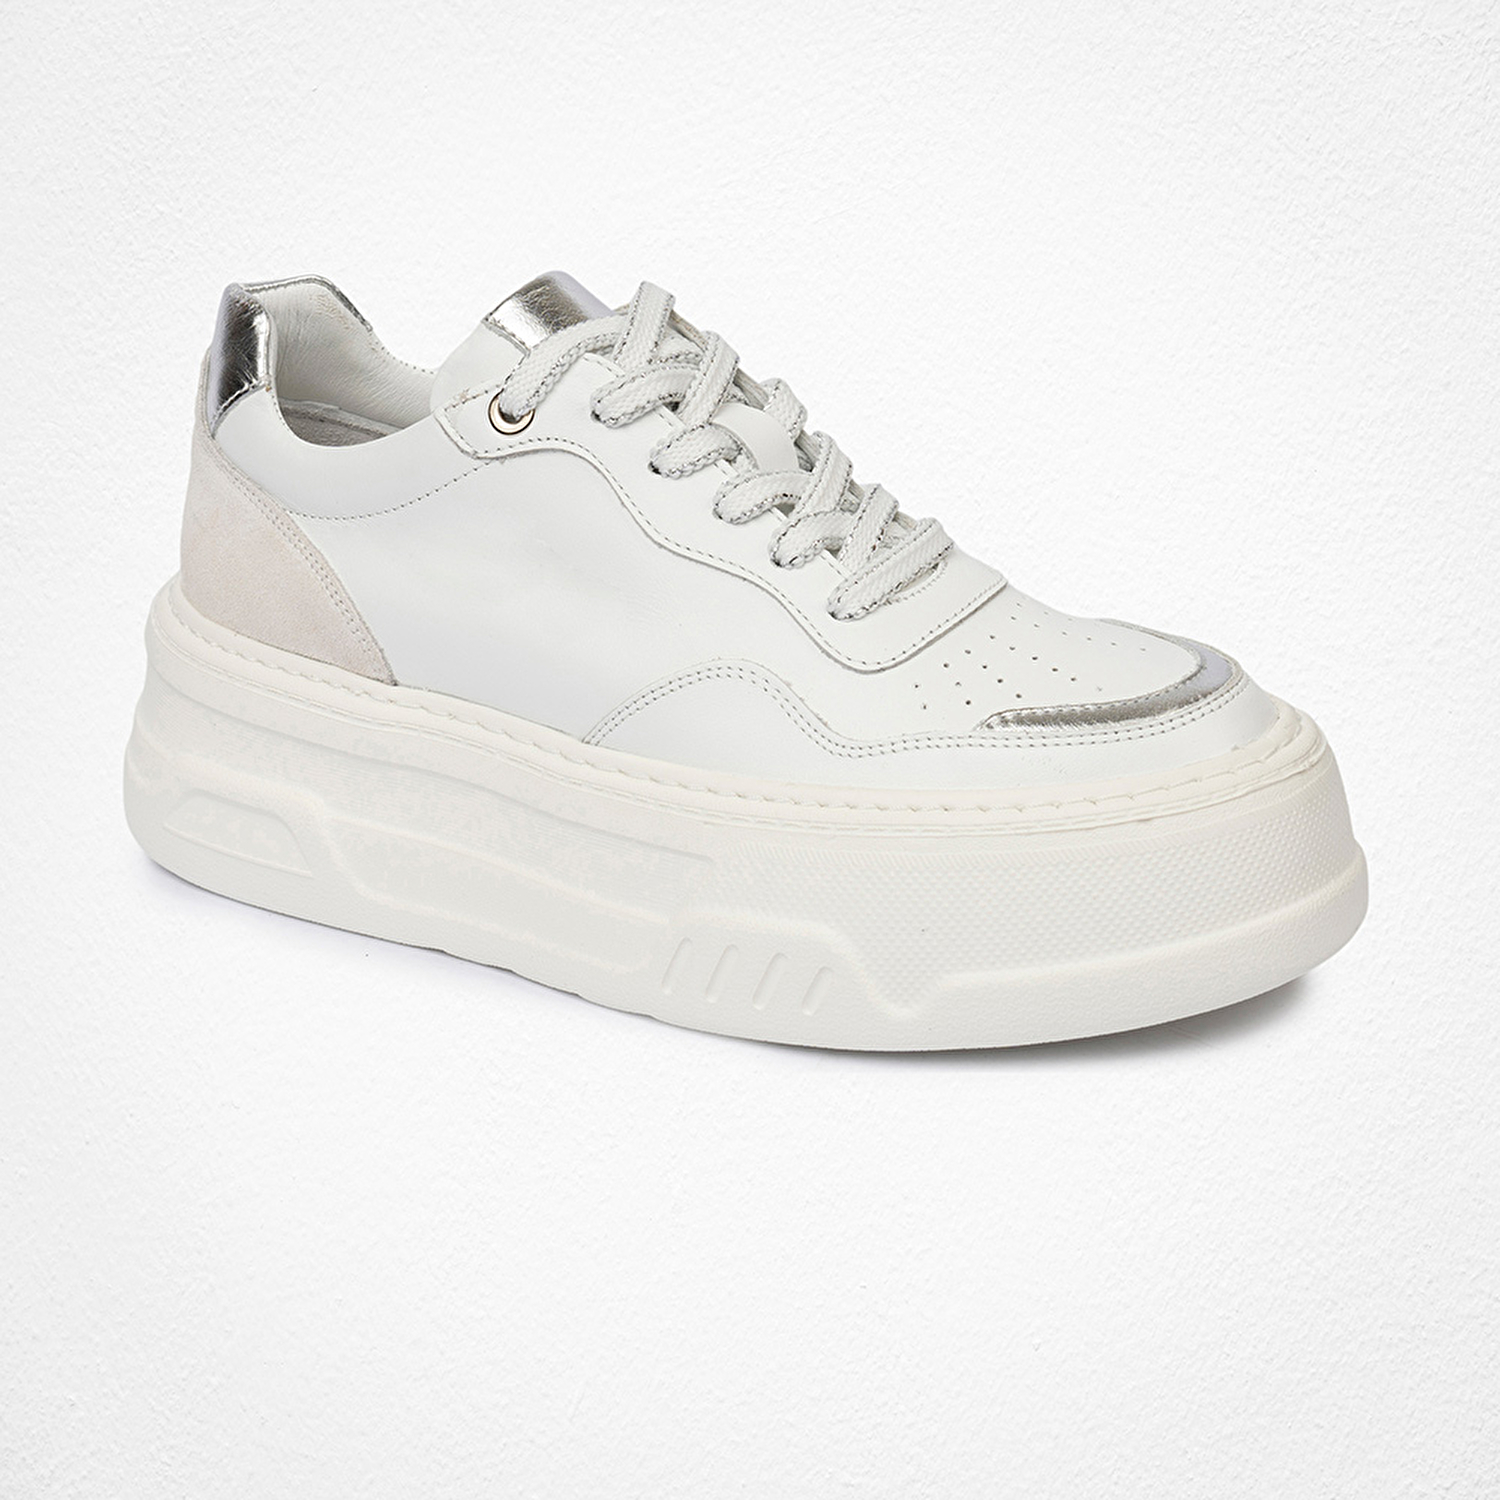 Kadın Beyaz Gümüş Sneaker Ayakkabı 4Y2SA59041-1